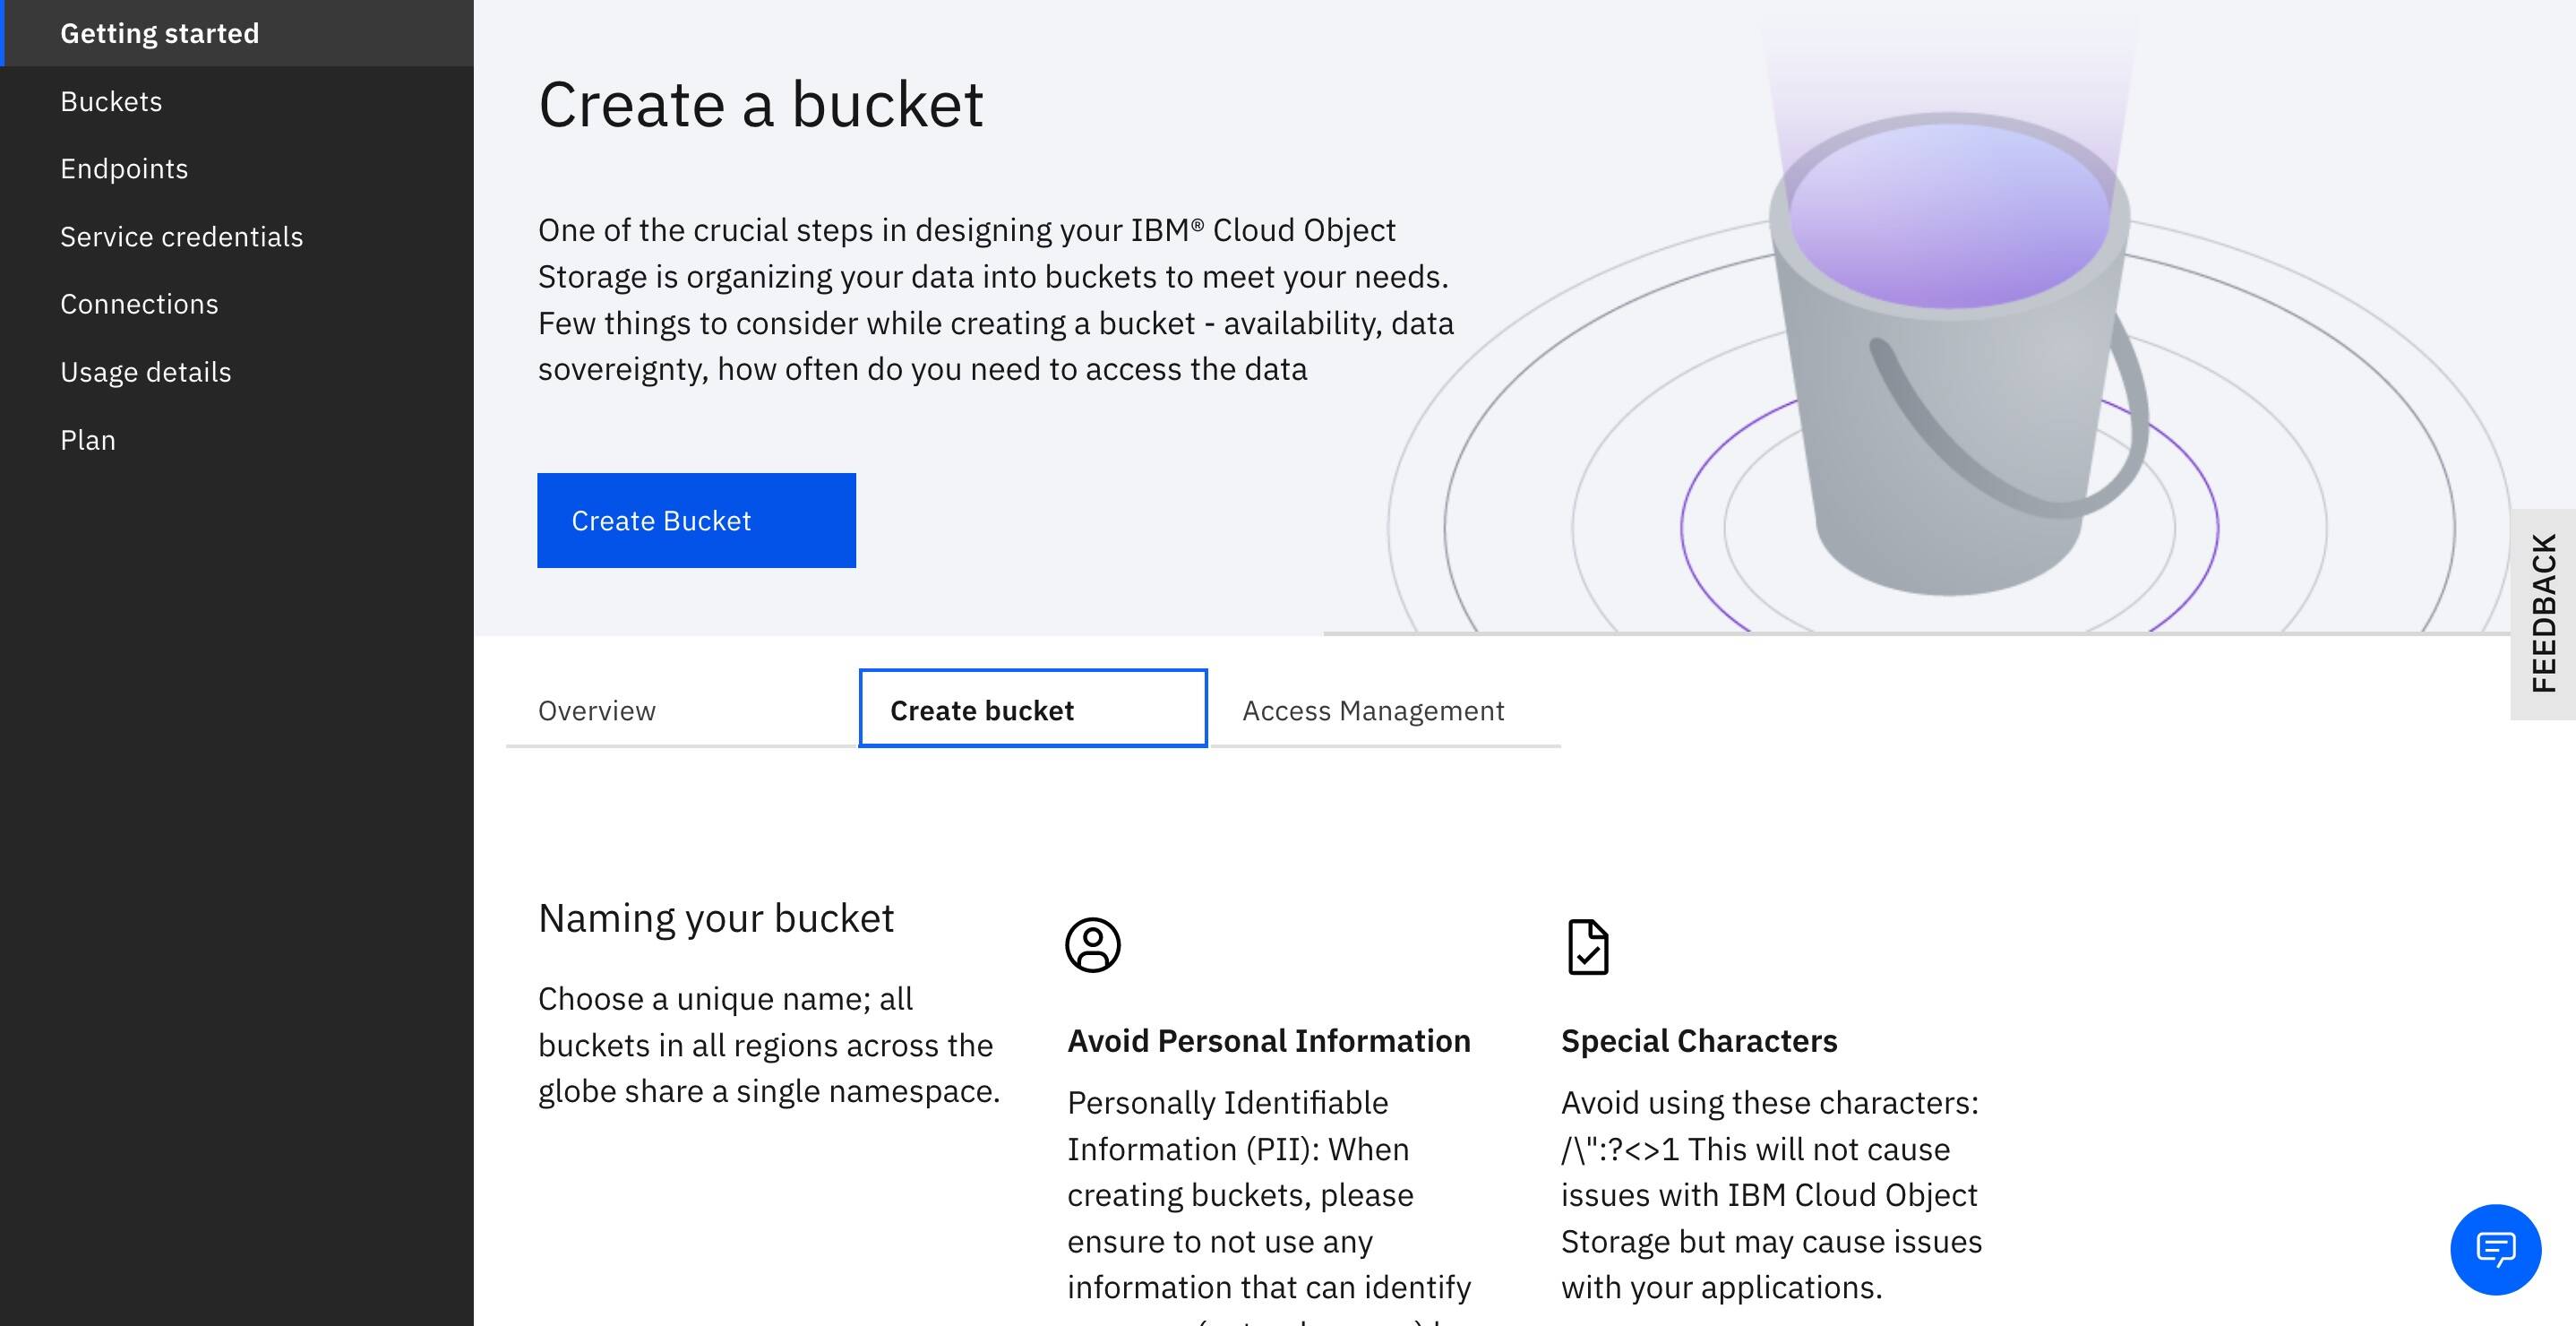 Creating a bucket